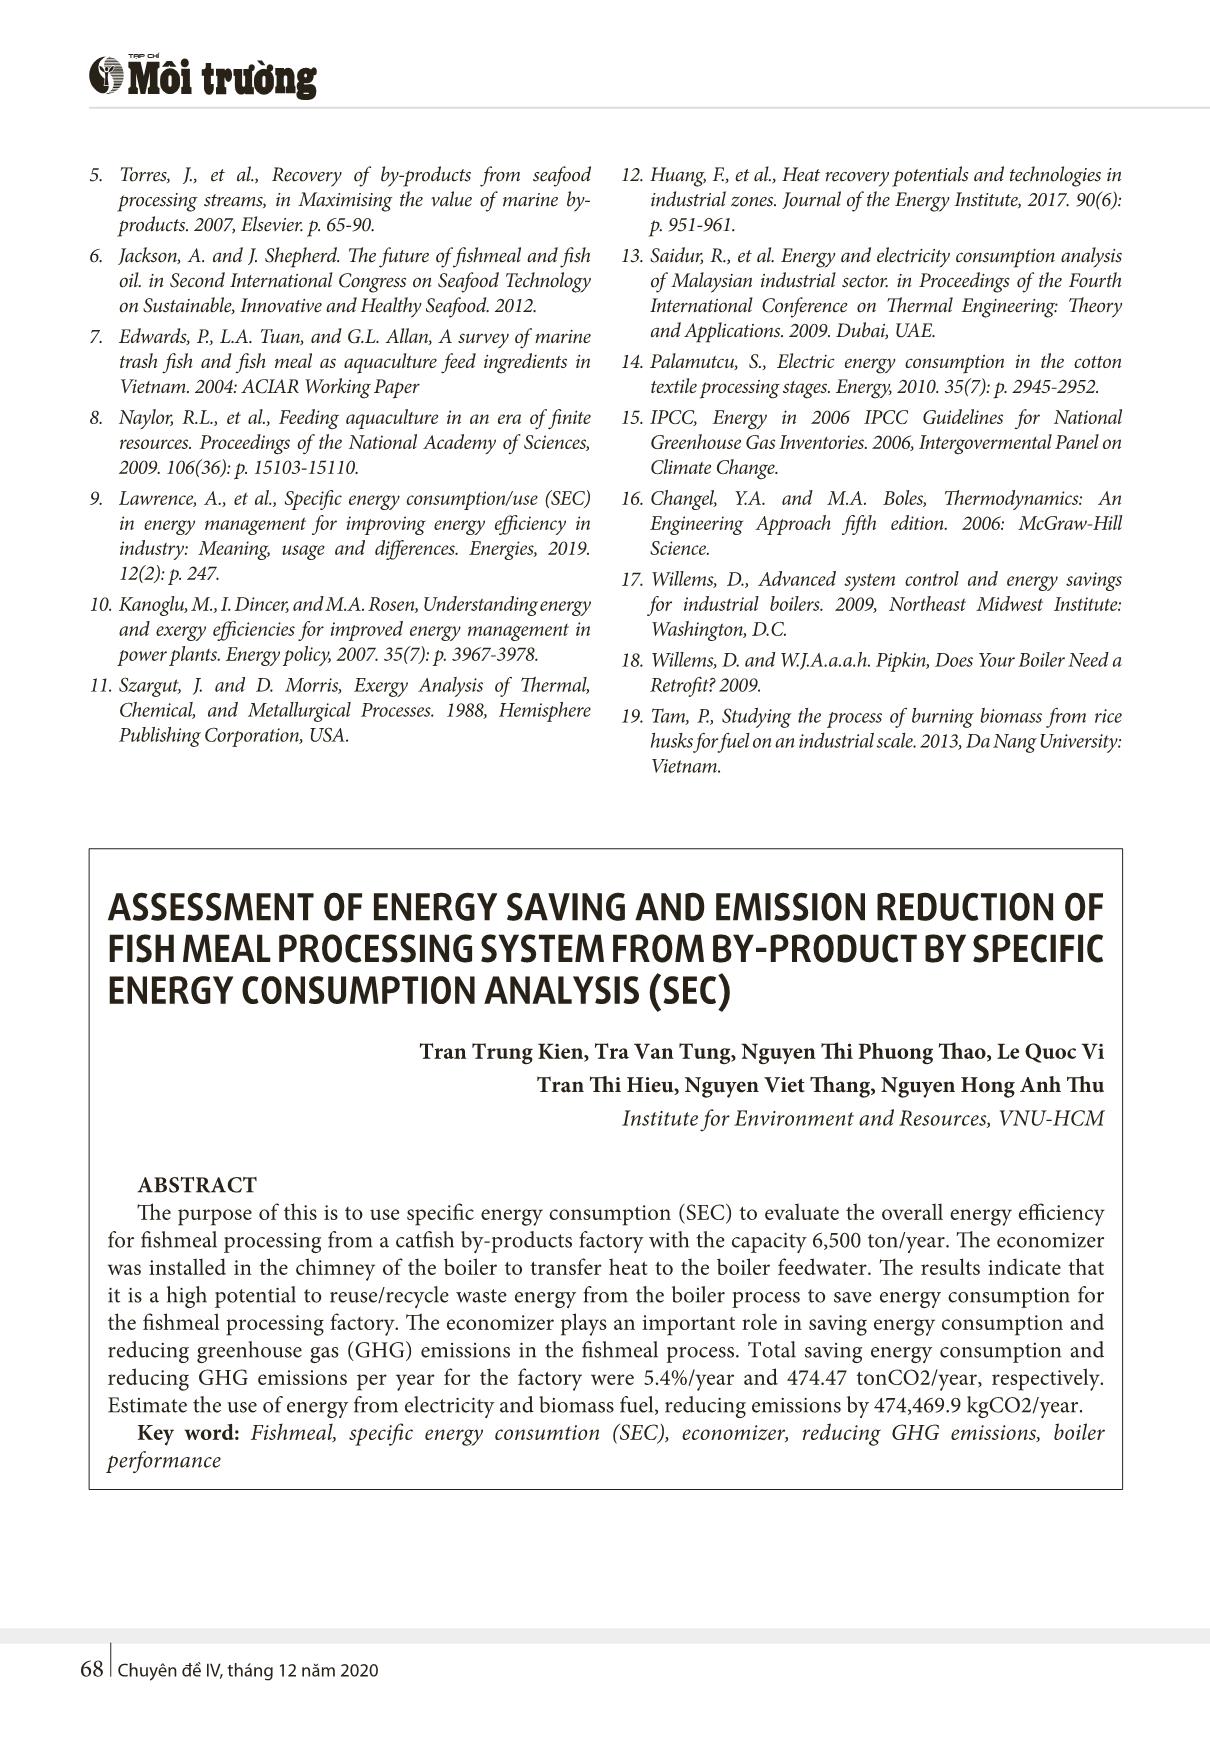 Đánh giá khả năng tiết kiệm năng lượng và giảm thiểu phát thải của hệ thống chế biến bột cá từ phụ phẩm bằng phân tích mức tiêu thụ năng lượng cụ thể (SEC) trang 7